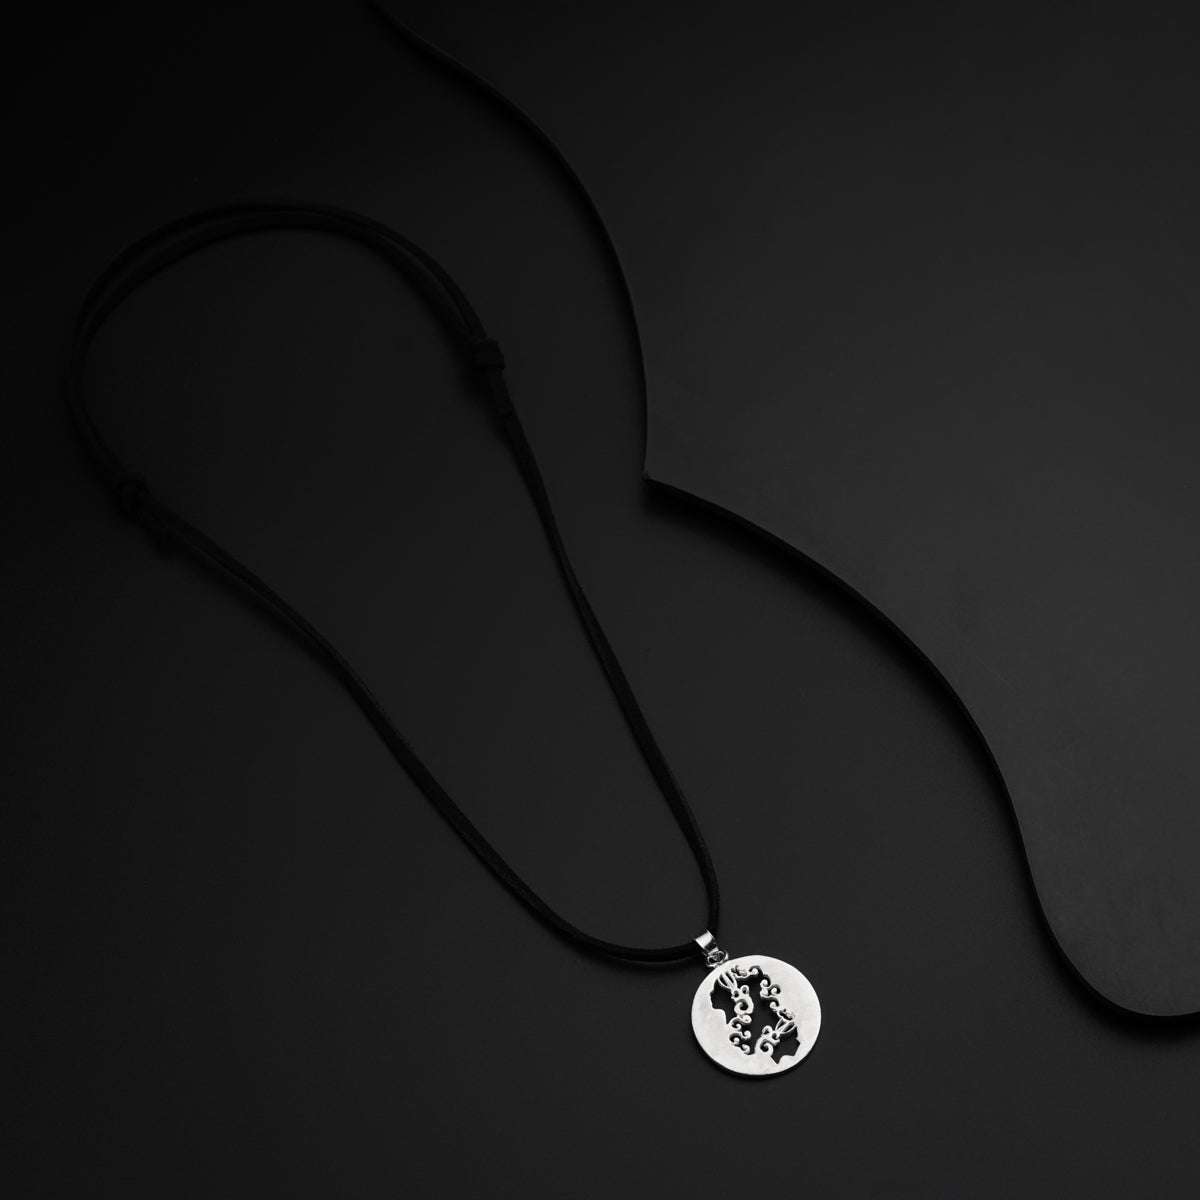 Gemini / मिथून Silver Pendant Necklace